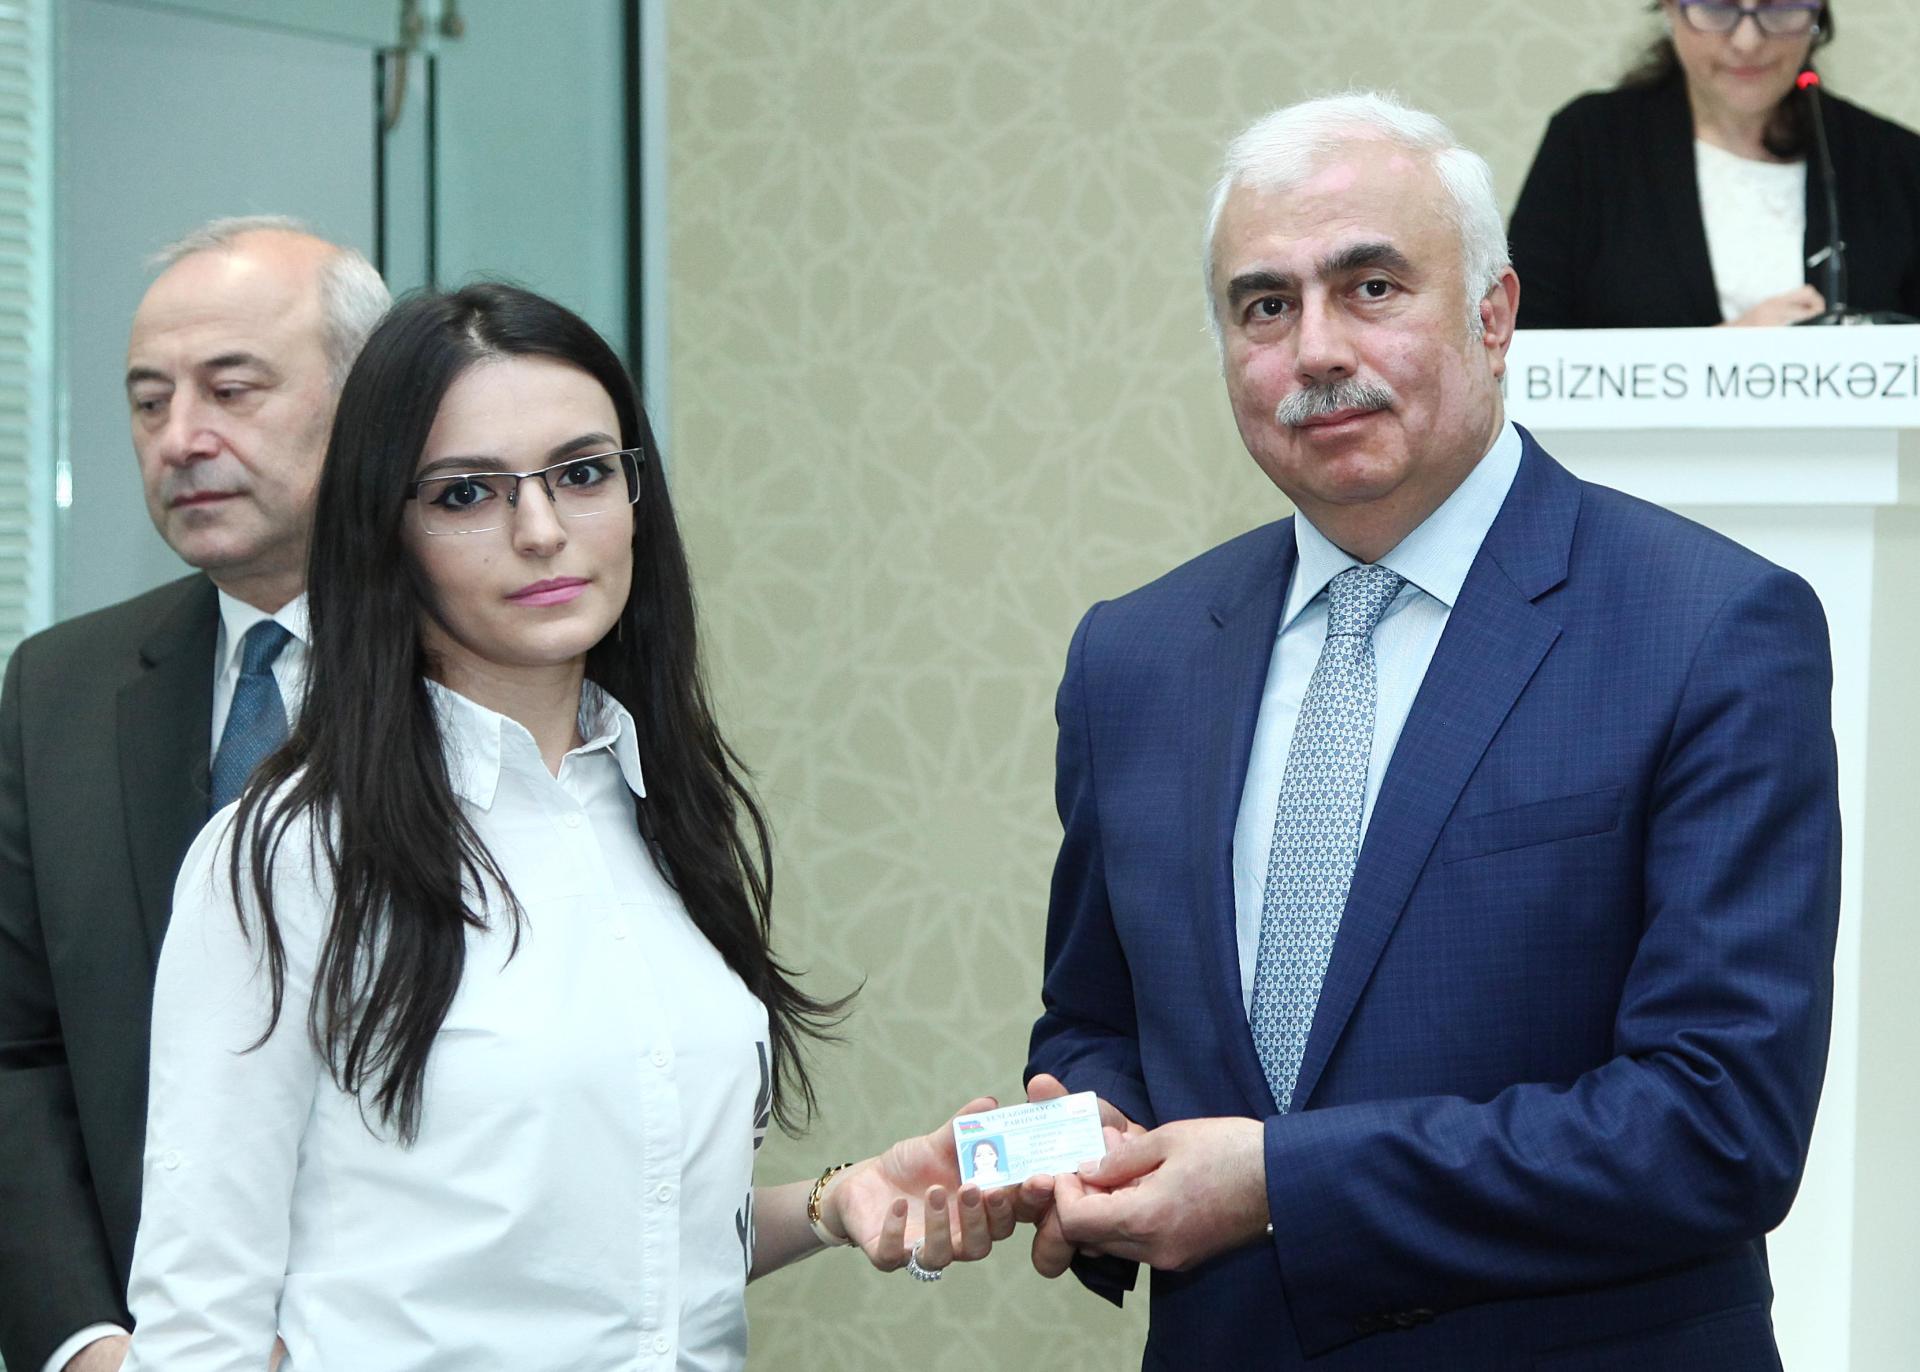 Сотрудник Trend стал победителем творческого конкурса на тему "Гейдар Алиев и экономические реформы" (ФОТО) - Gallery Image